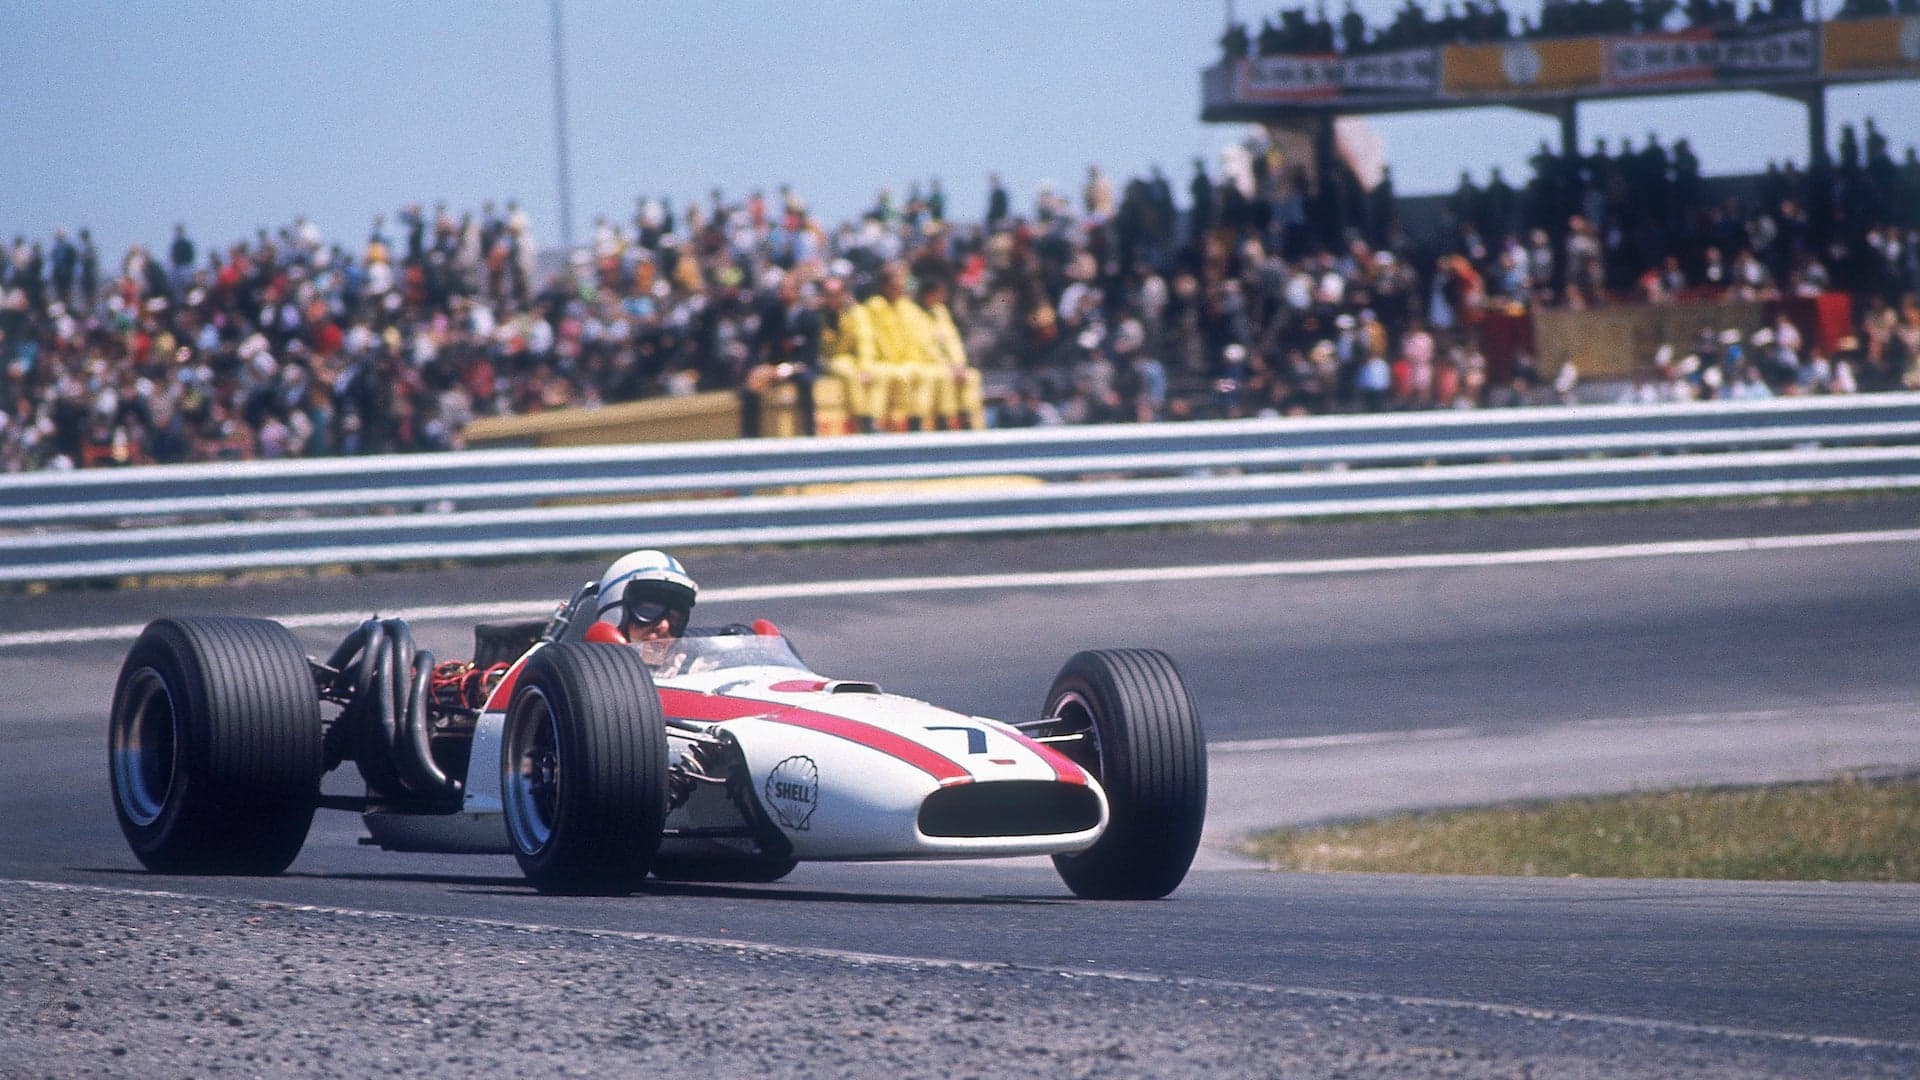 John Surtees, F1 and Motorcycle Racing Hero, Dies at 83